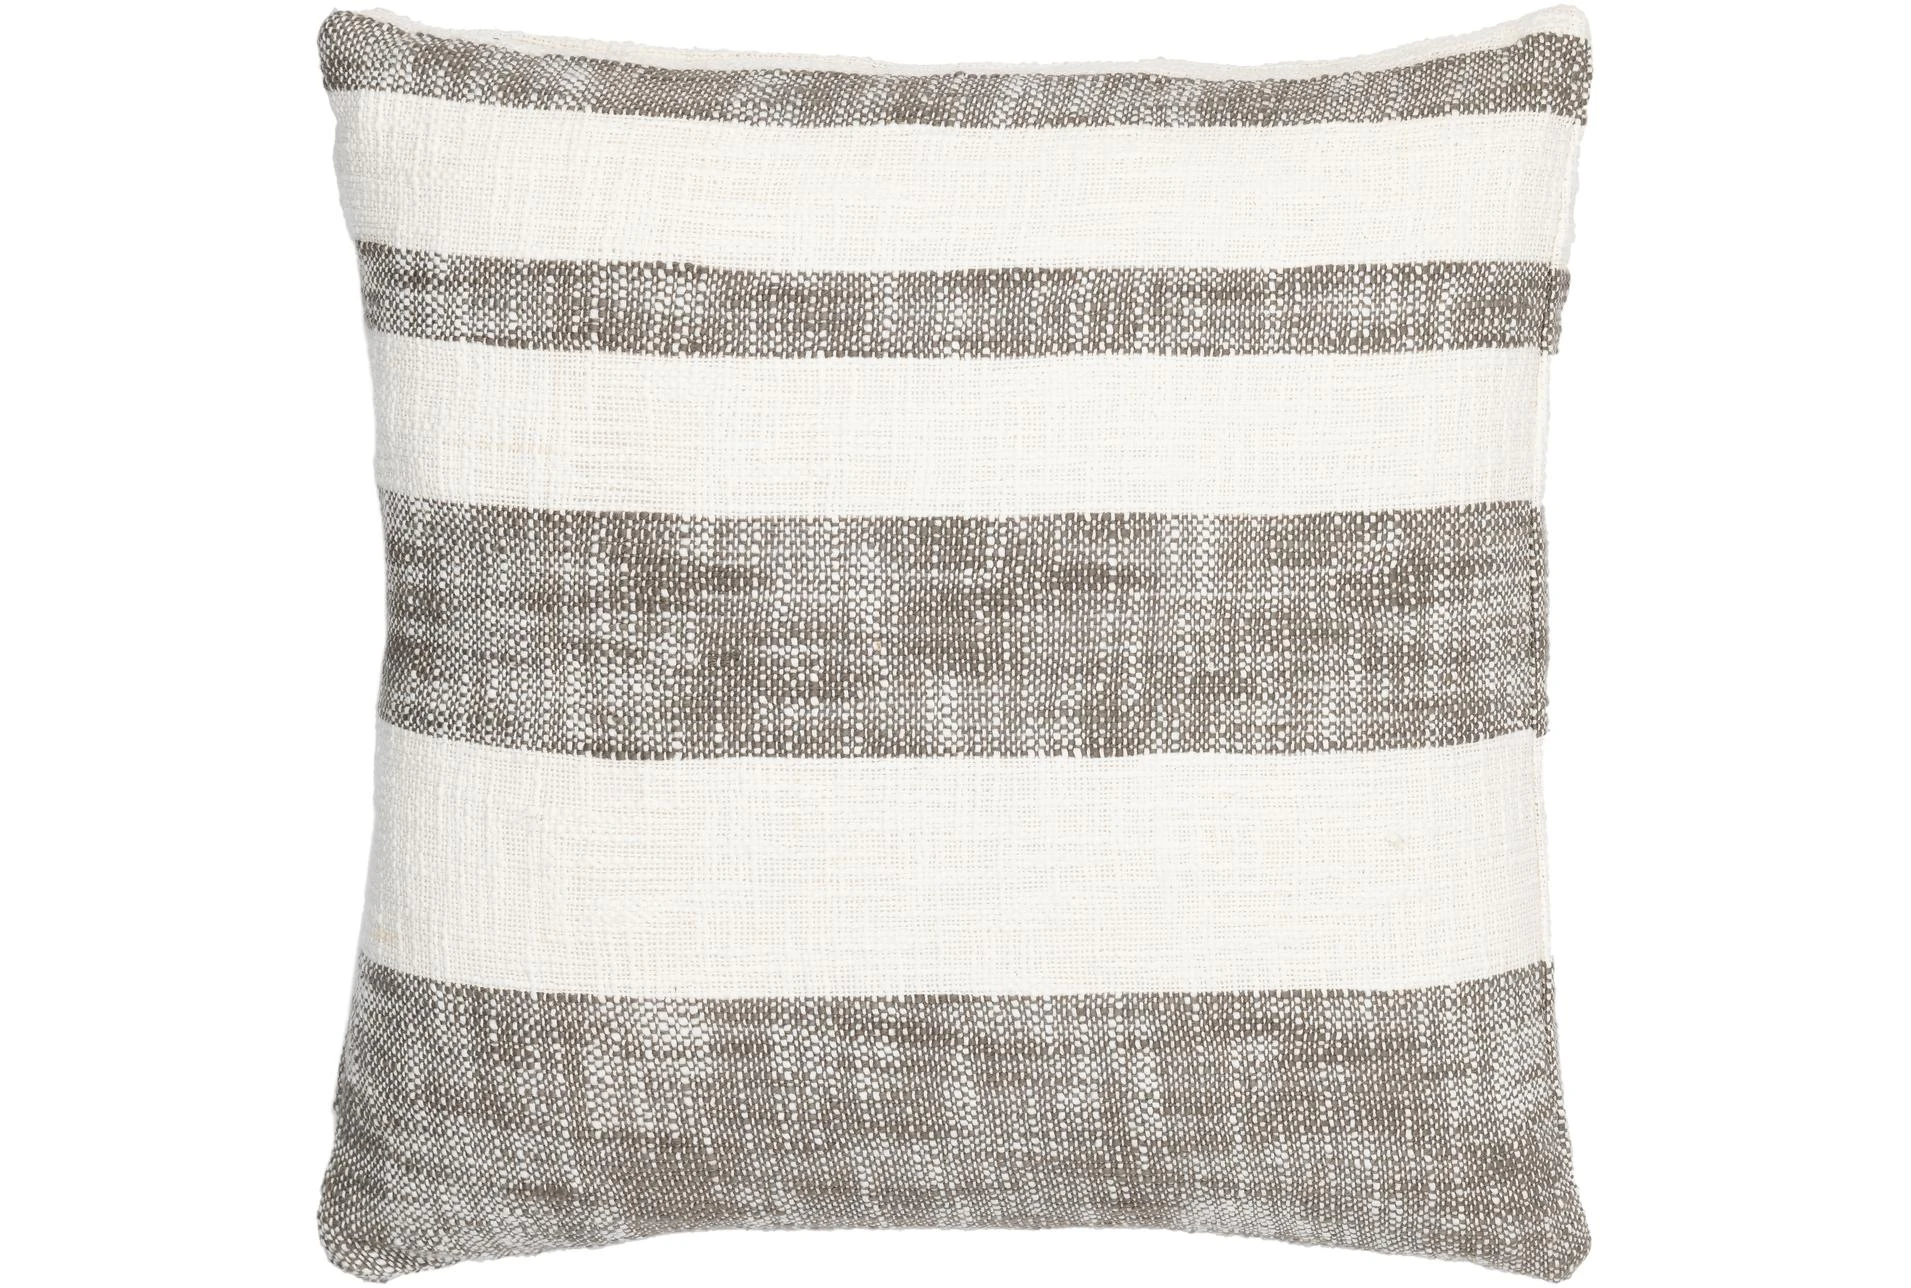 18X18 White + Textured Brown Stripes Throw Pillow